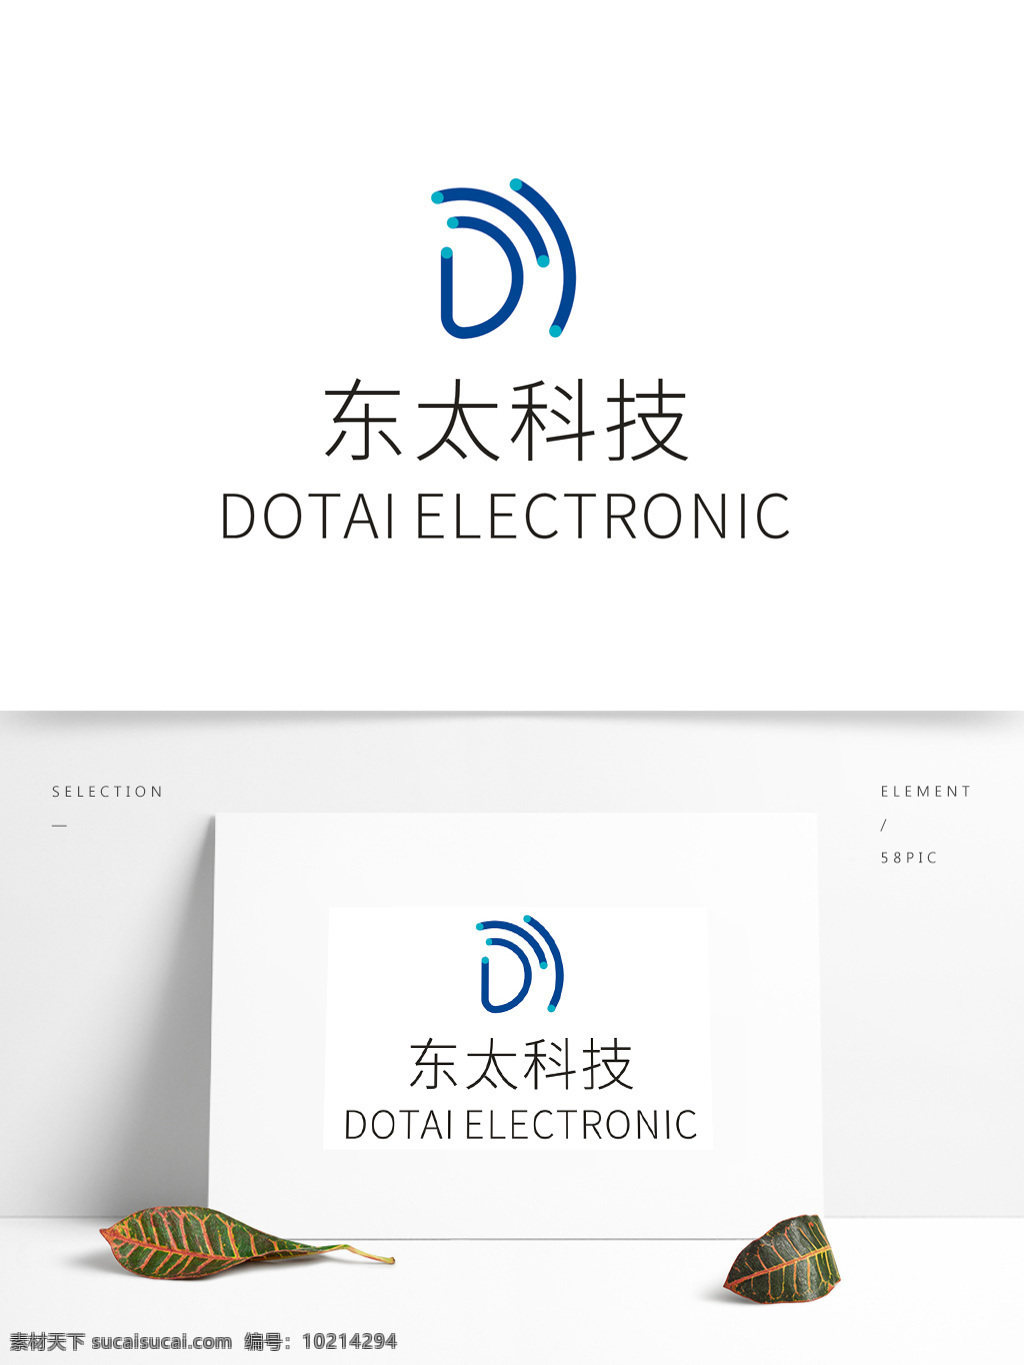 东太 电子 科技 logo 标志 电工 电路板 电路线 集成电路 简约 蓝色标志 科技公司 电器logo 电子电器 电器公司